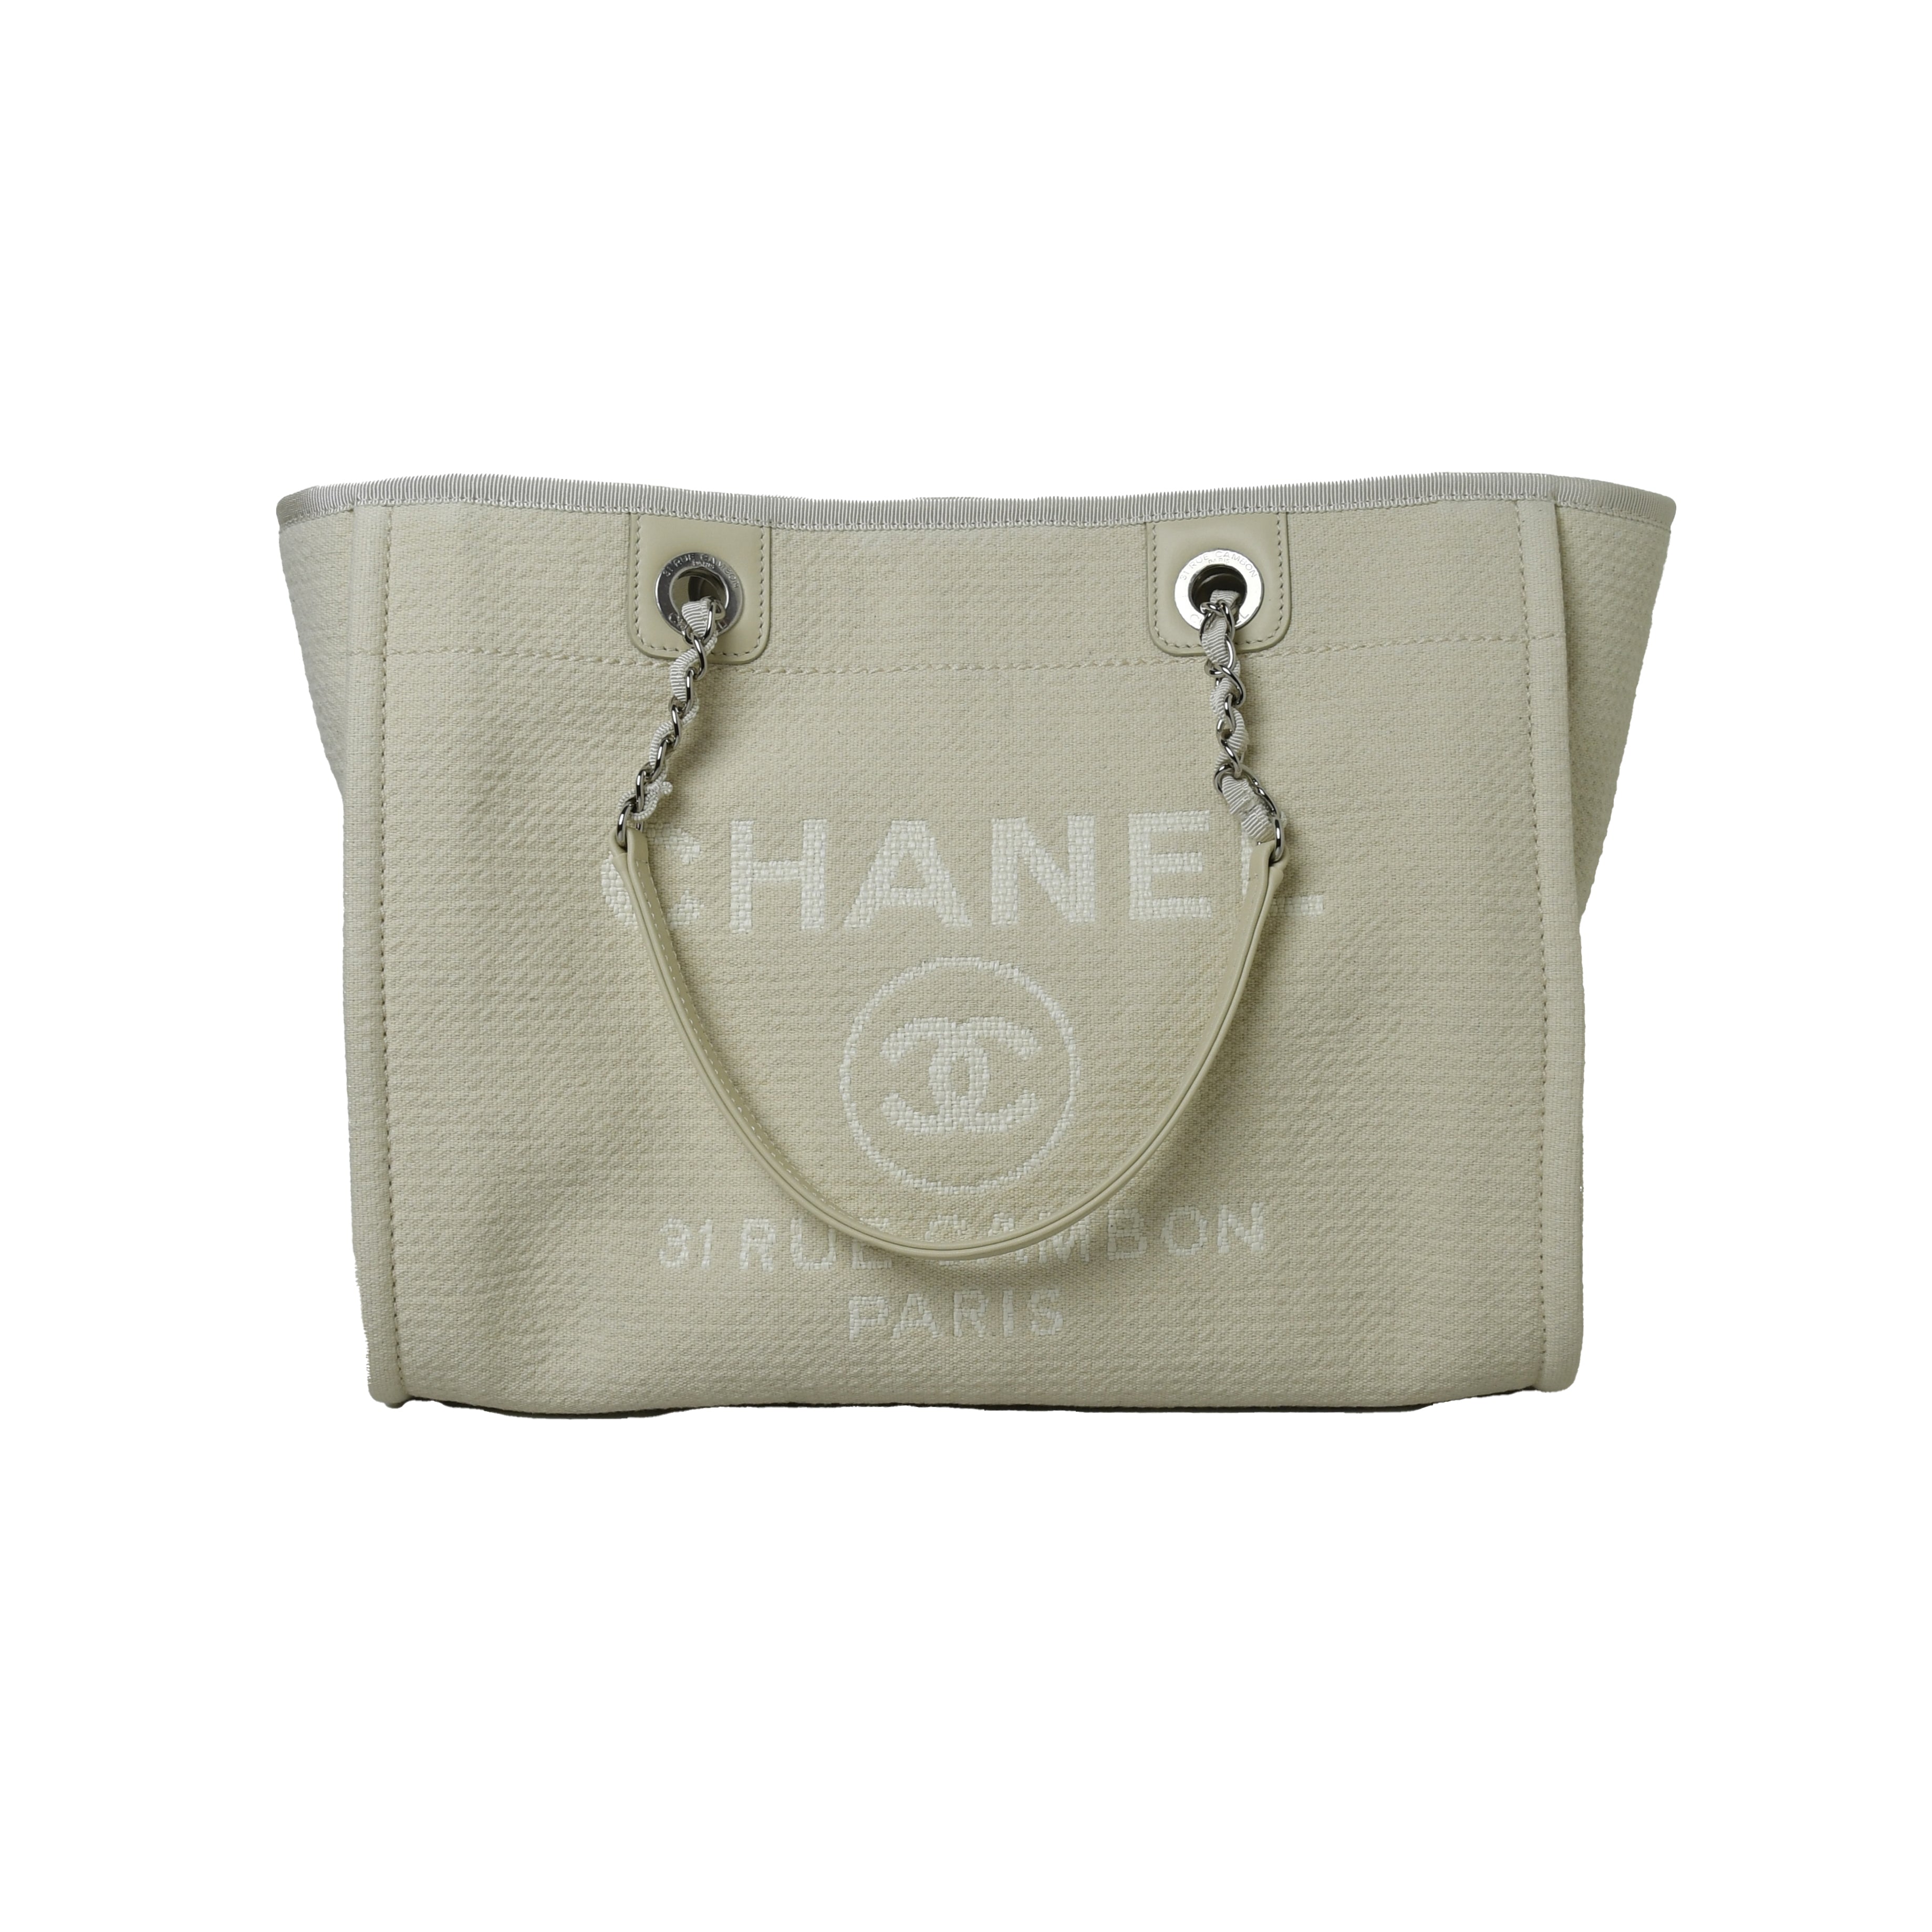 Chanel Bag Small Deauville Tote Grey Raffia